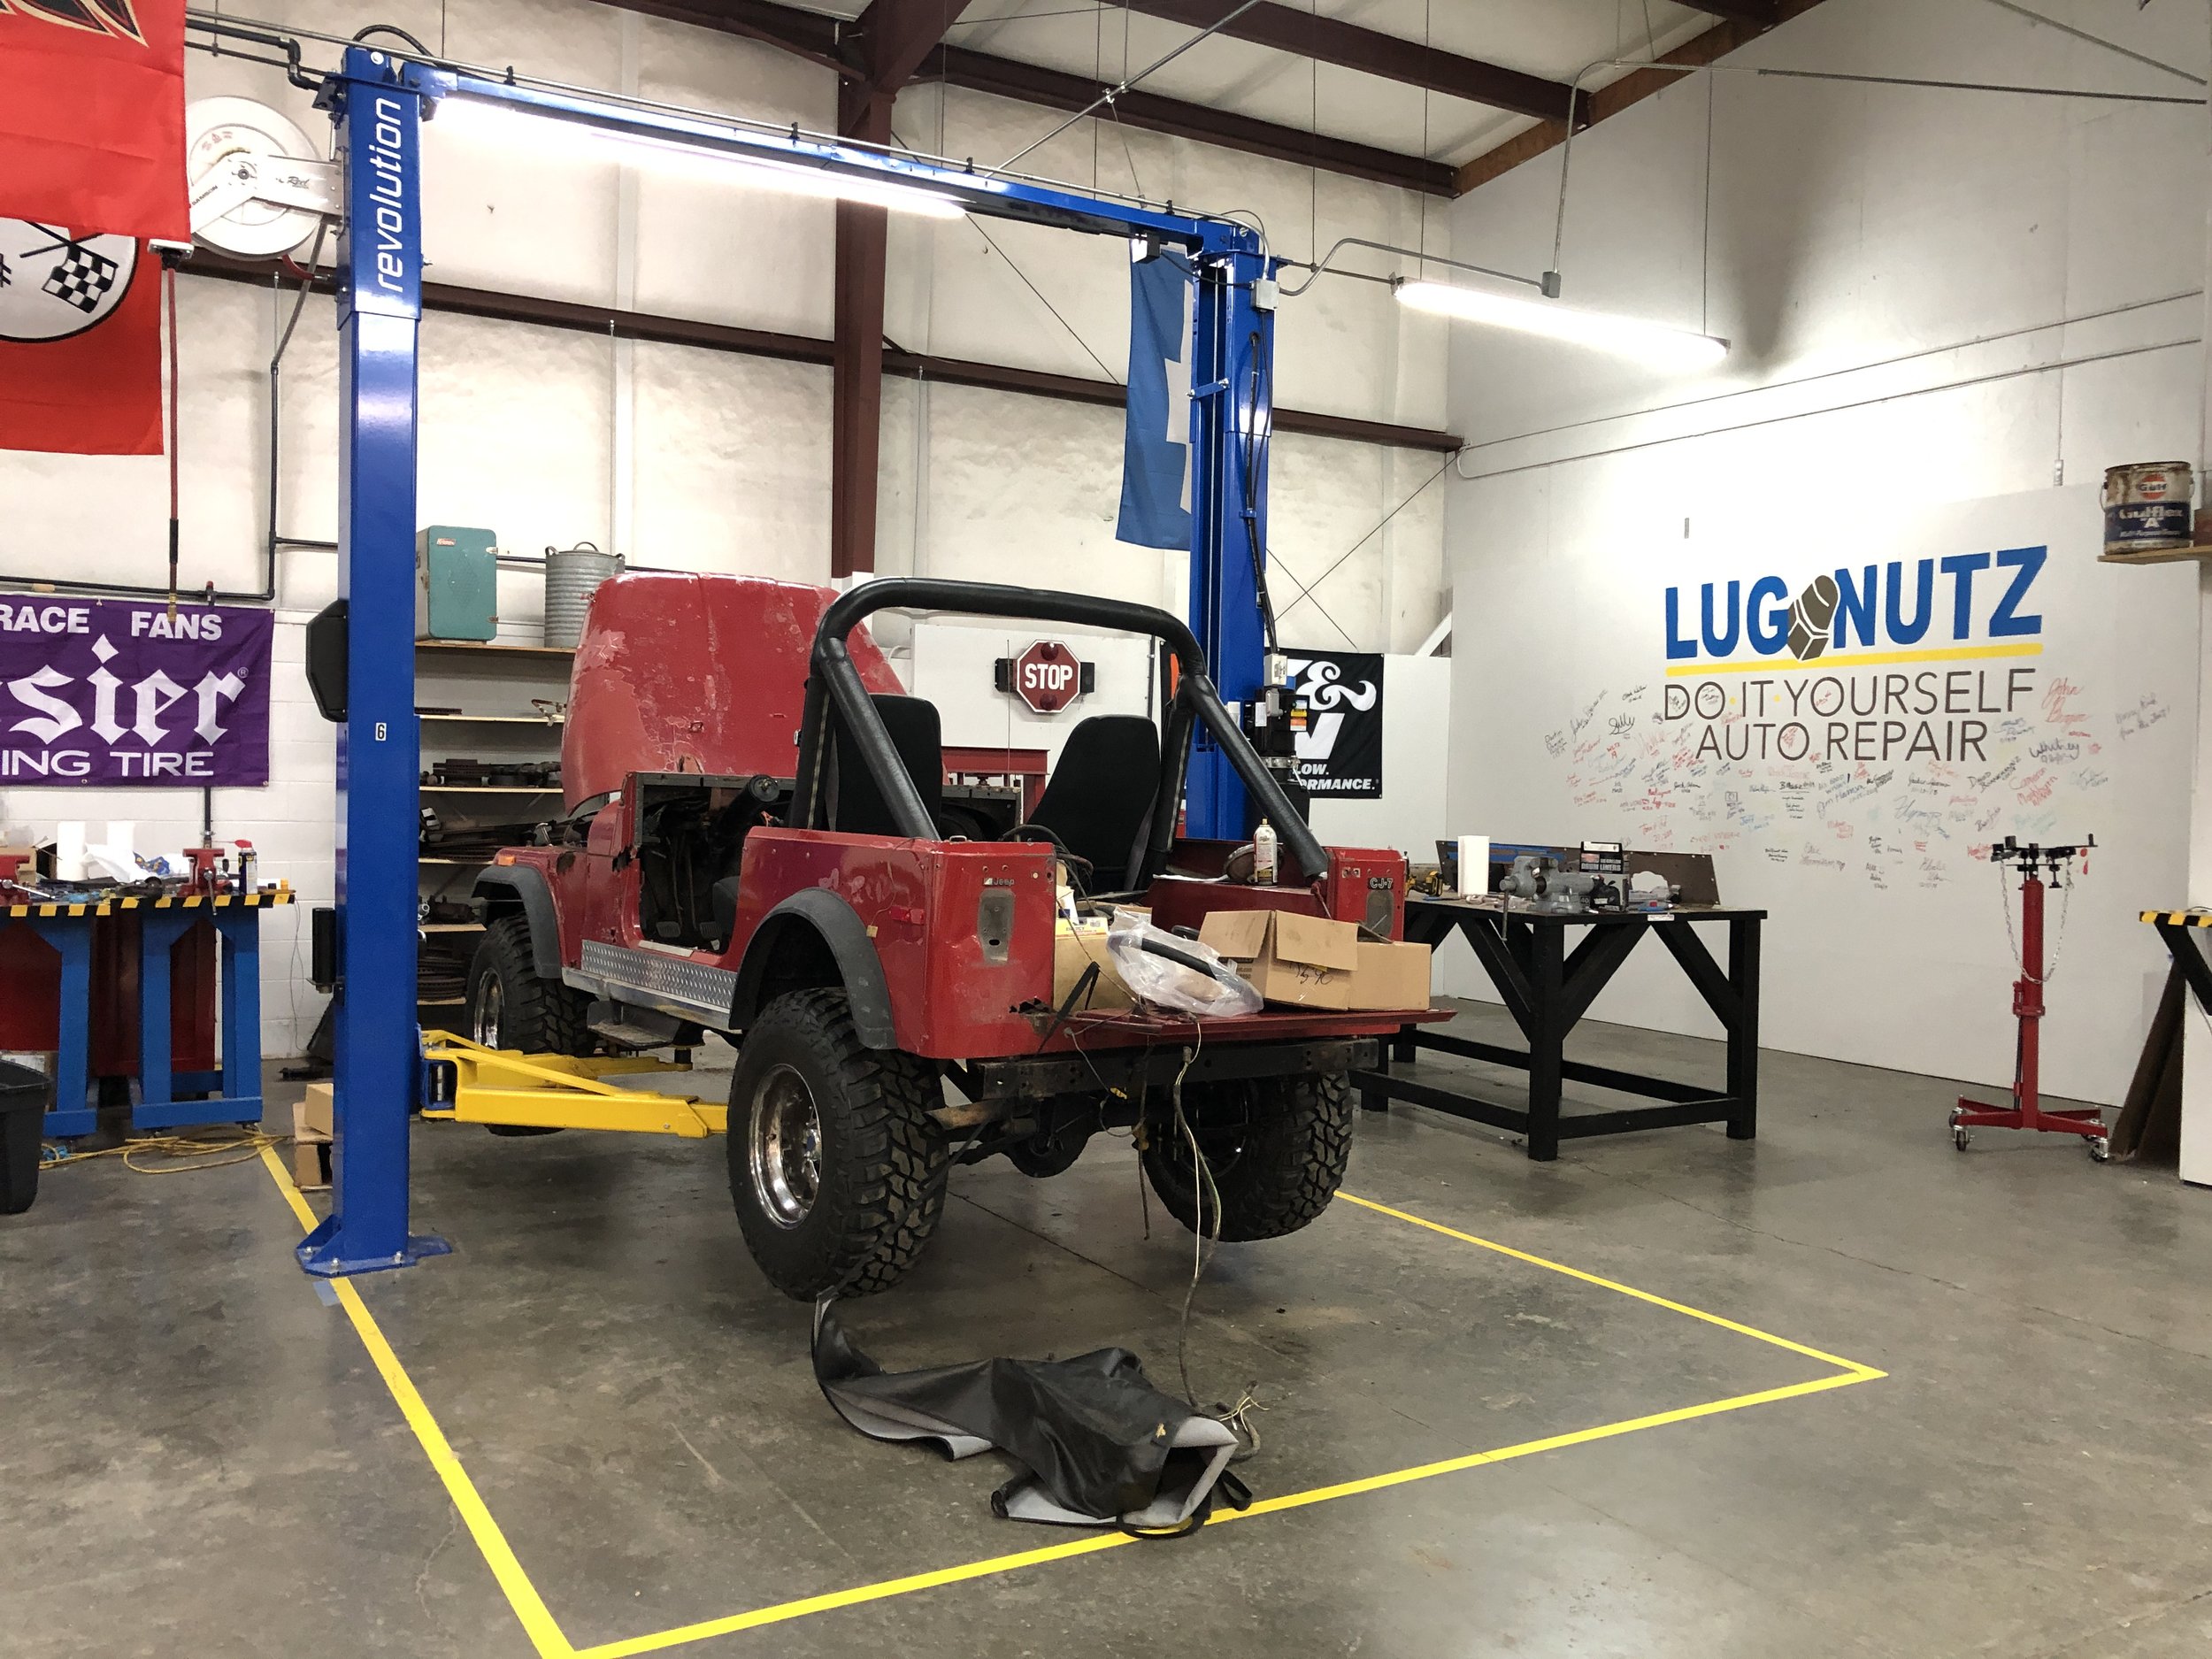 Lugnutz Diy Pioneers Cheaper Hands On Car Repair In Soda City Katerina Barrie